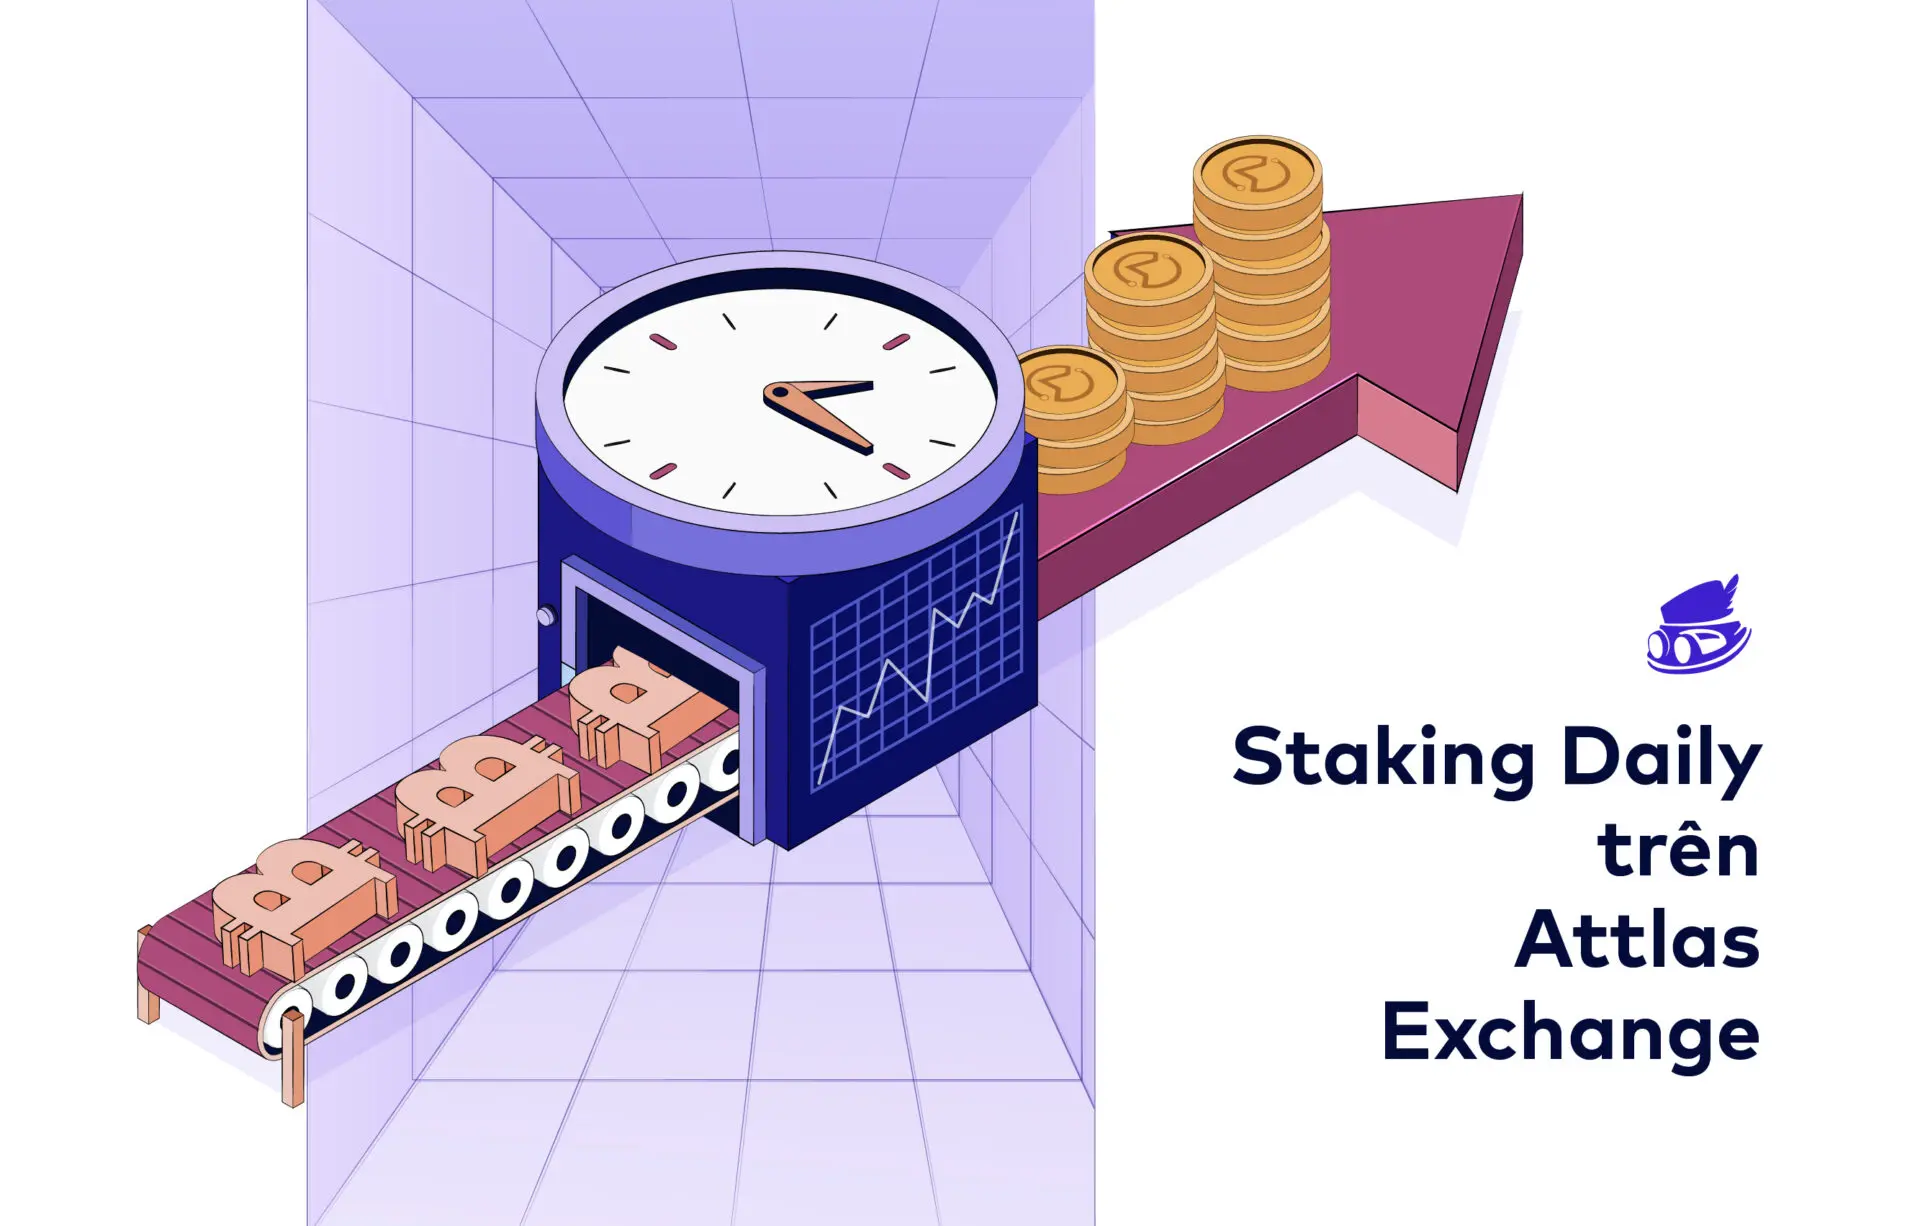 Nhận lãi suất GẤP 5 LẦN khi tham gia Staking Daily cho Bitcoin trên Attlas Exchange